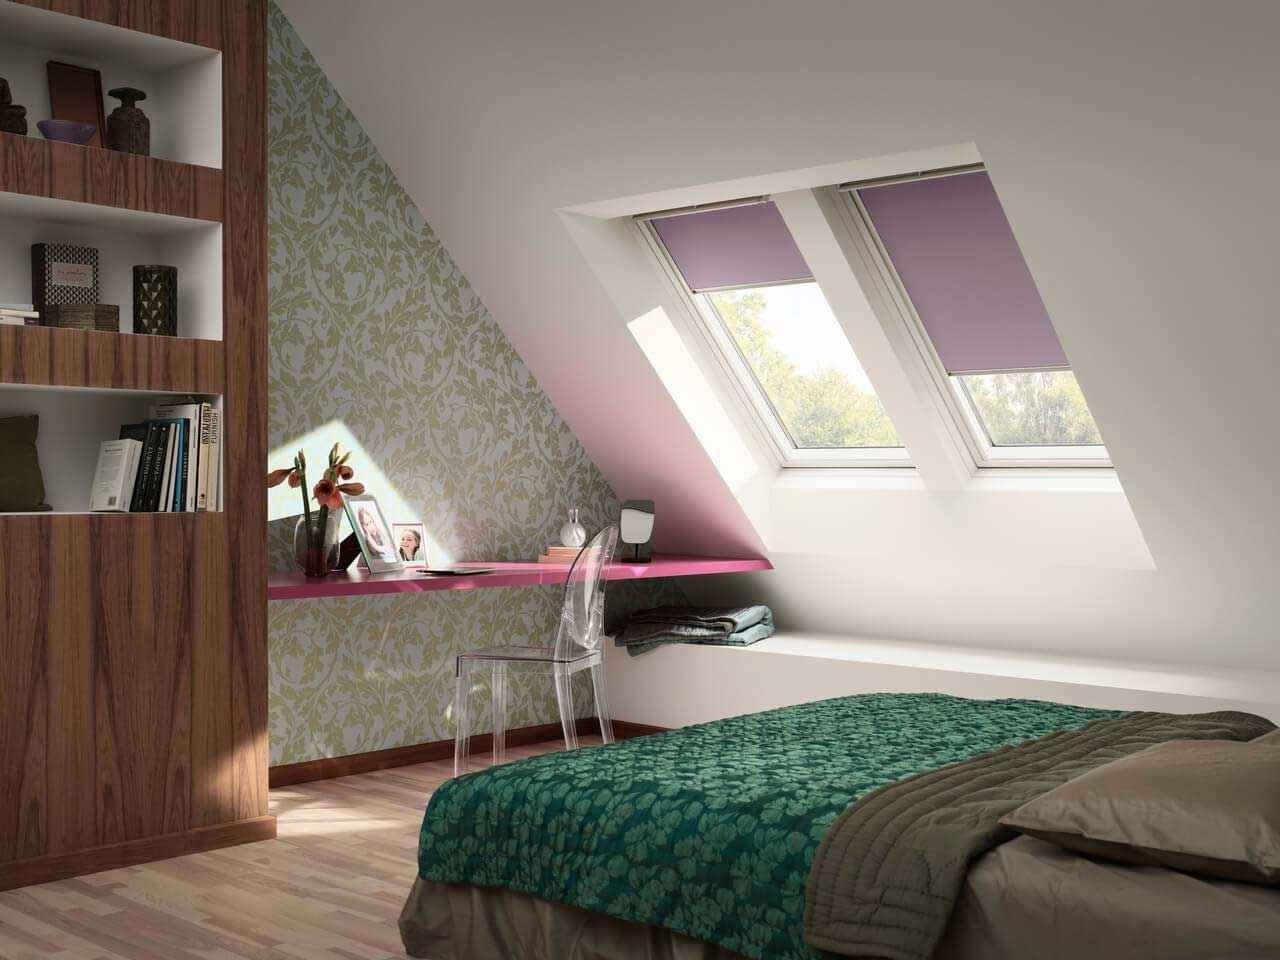 Dachschräge Tapezieren | Velux Magazin throughout Dachschräge Schlafzimmer Tapezieren